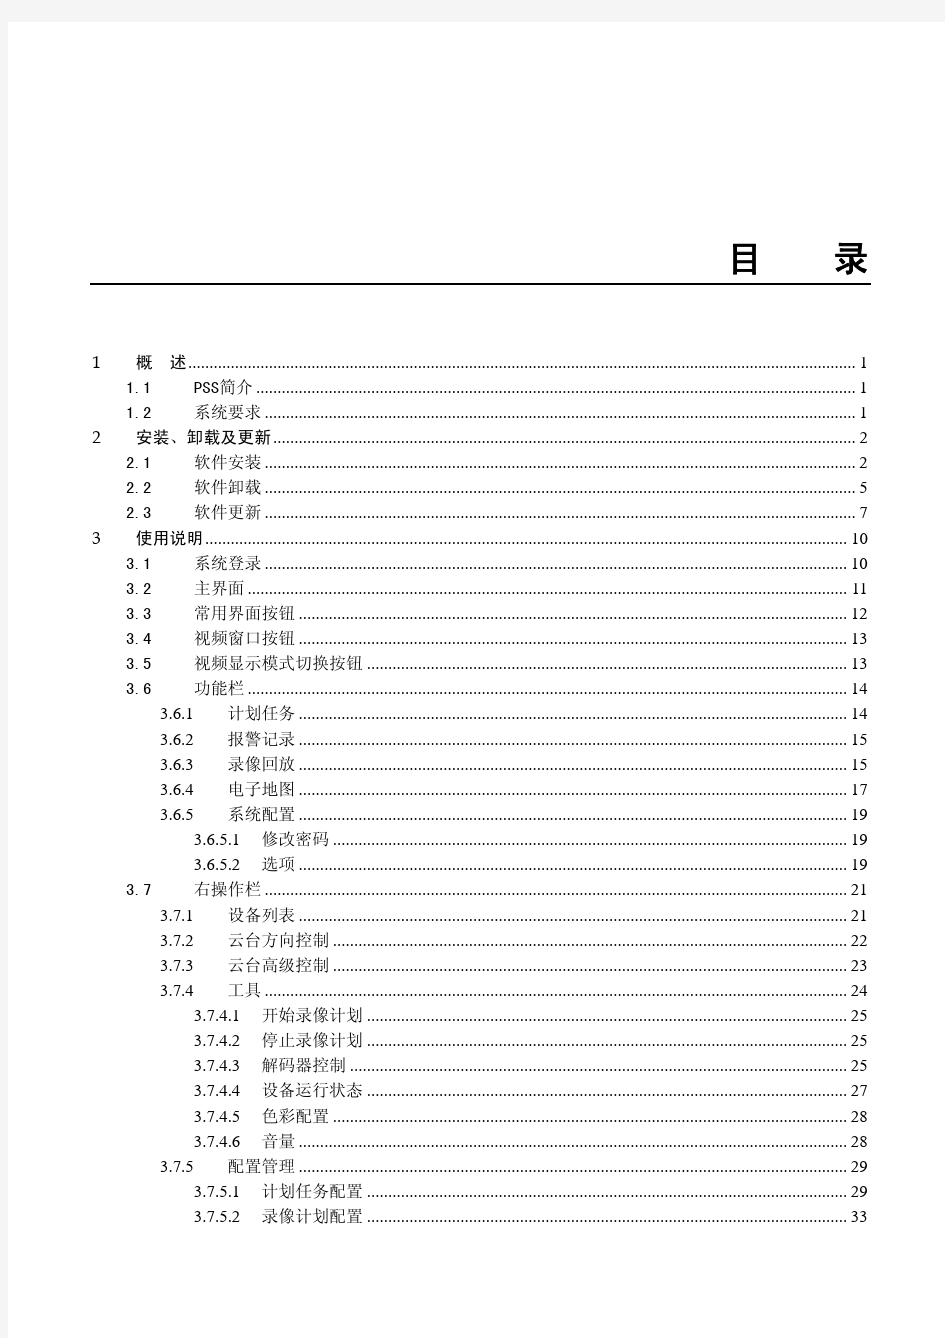 大华监控系统中文版使用手册